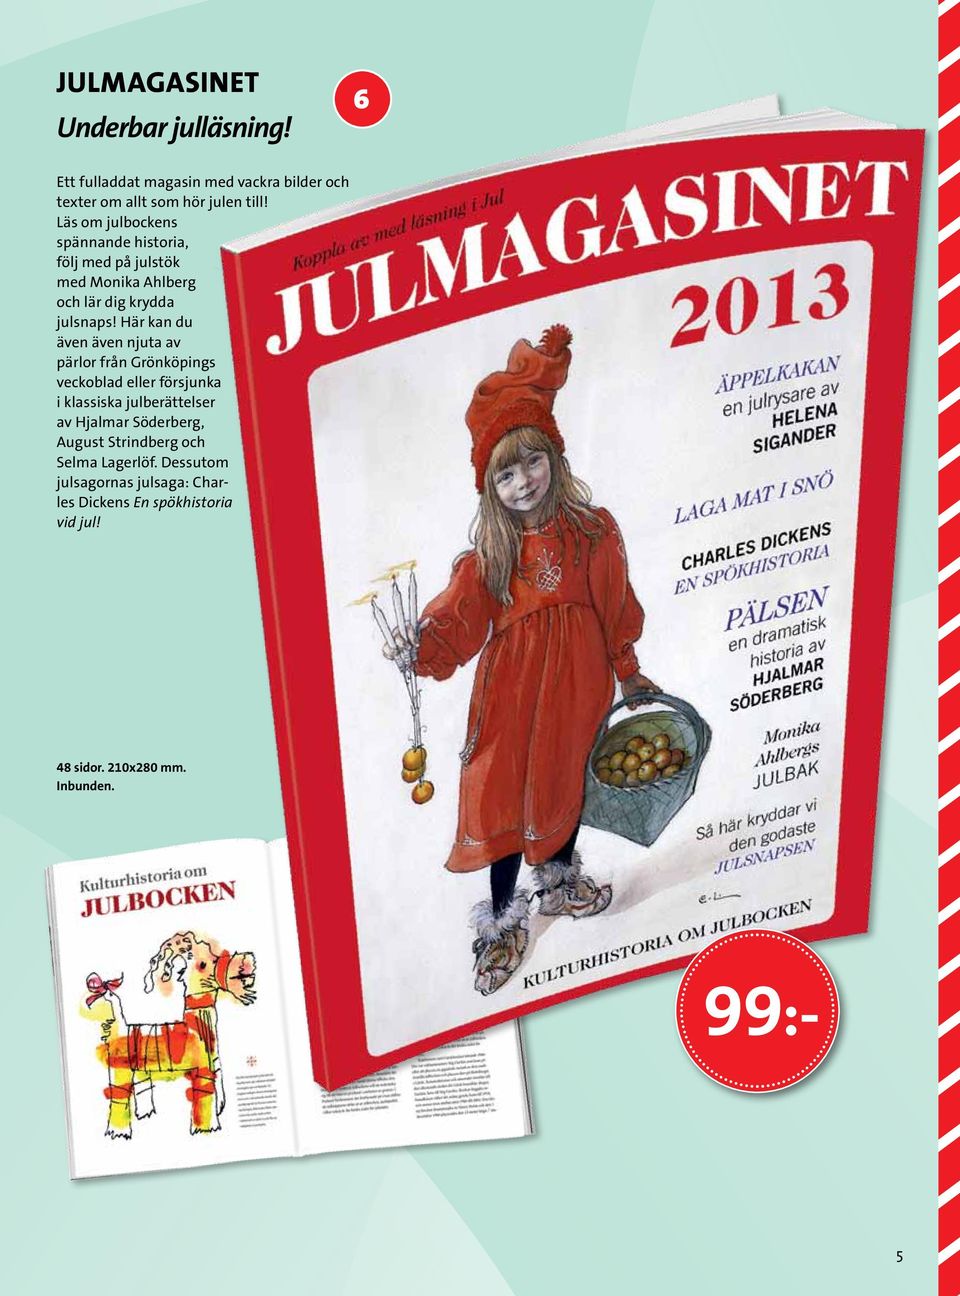 Här kan du även även njuta av pärlor från Grönköpings veckoblad eller försjunka i klassiska julberättelser av Hjalmar